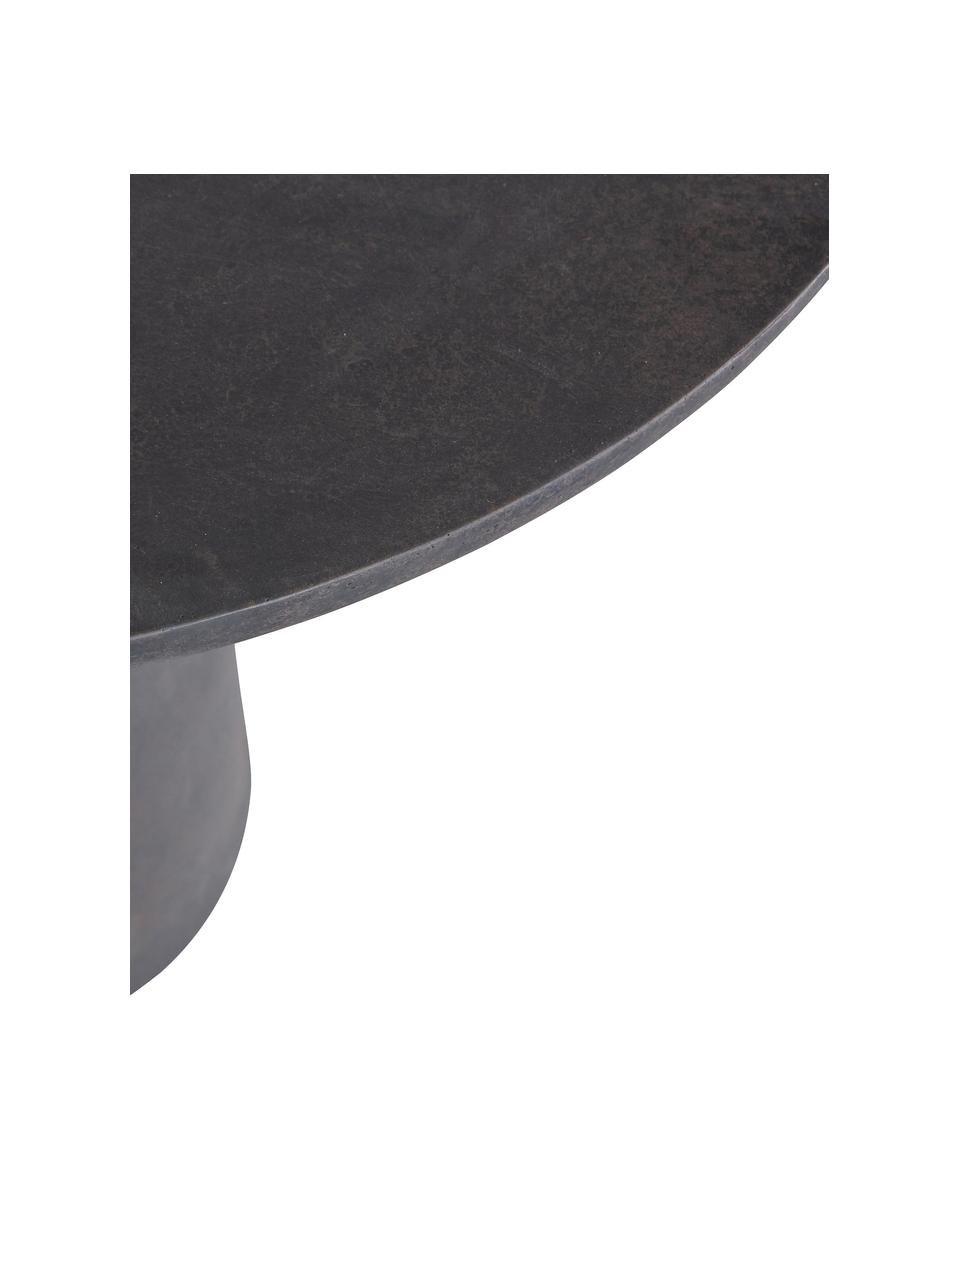 Tavolo rotondo da giardino in cemento Damon, Ø 100 cm, Rivestimento in cemento e fibra di vetro, Marrone scuro, Ø 100 x Alt. 76 cm